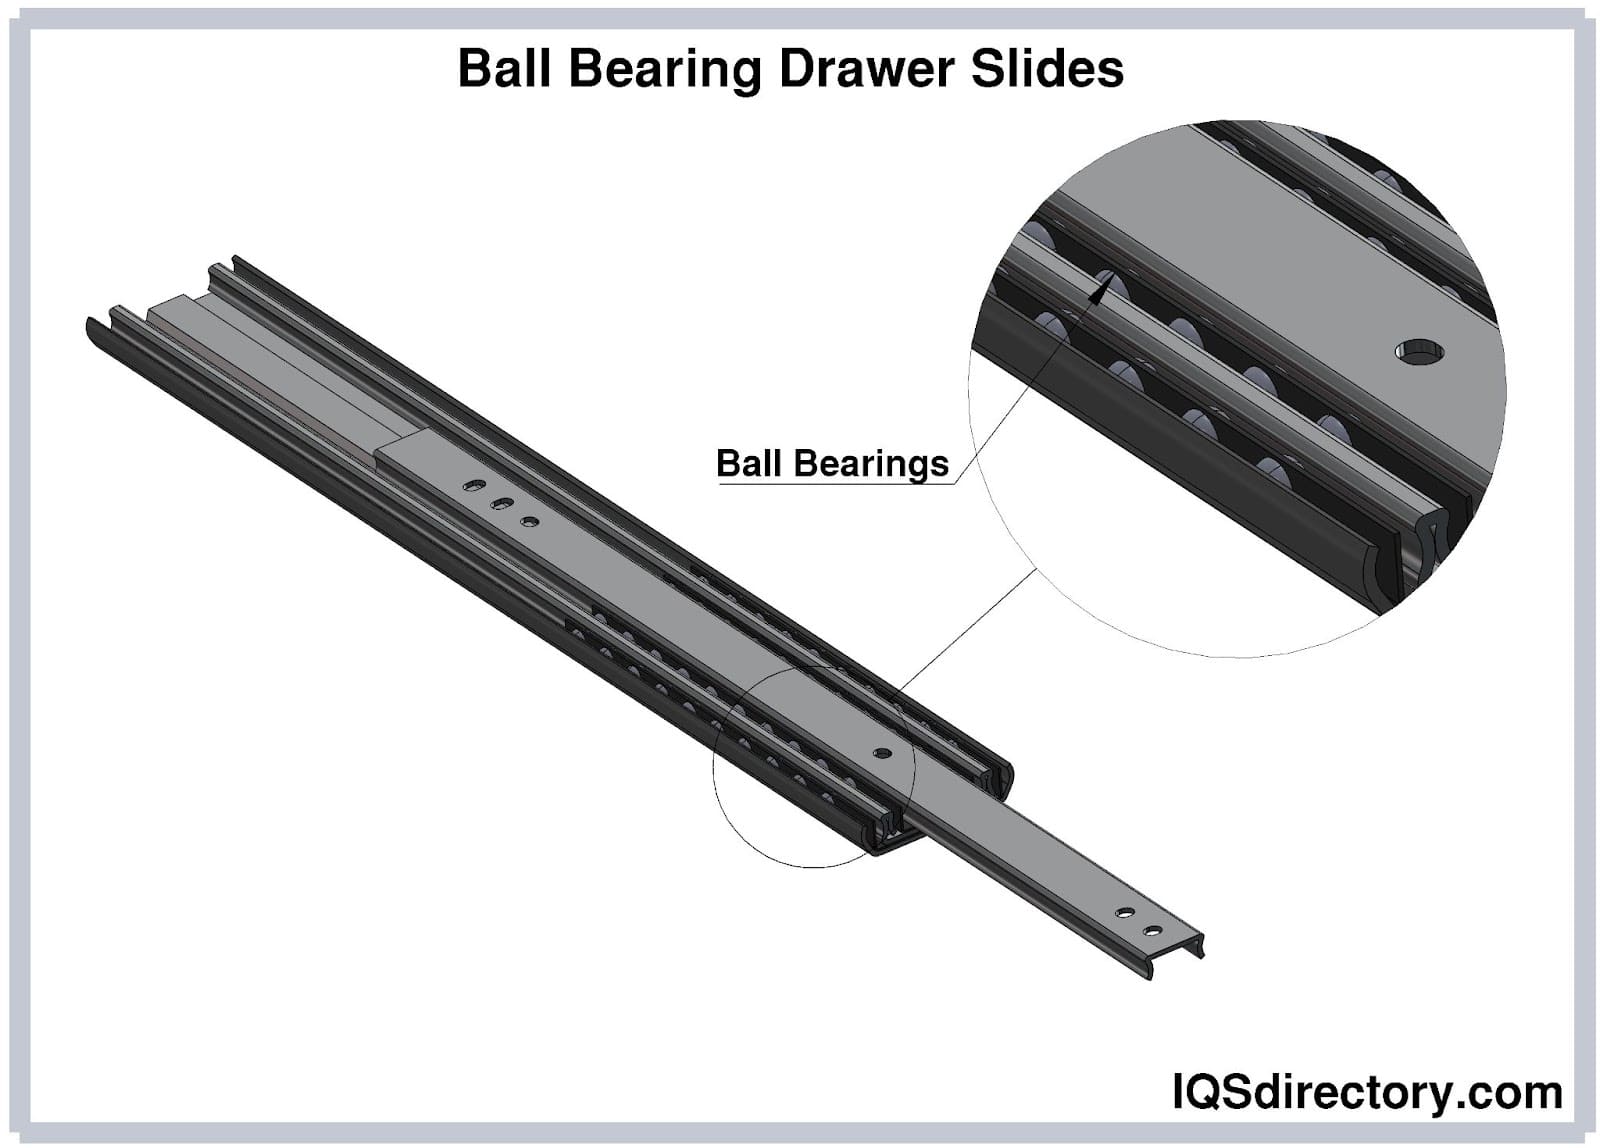 Ball Bearing Drawer Slides